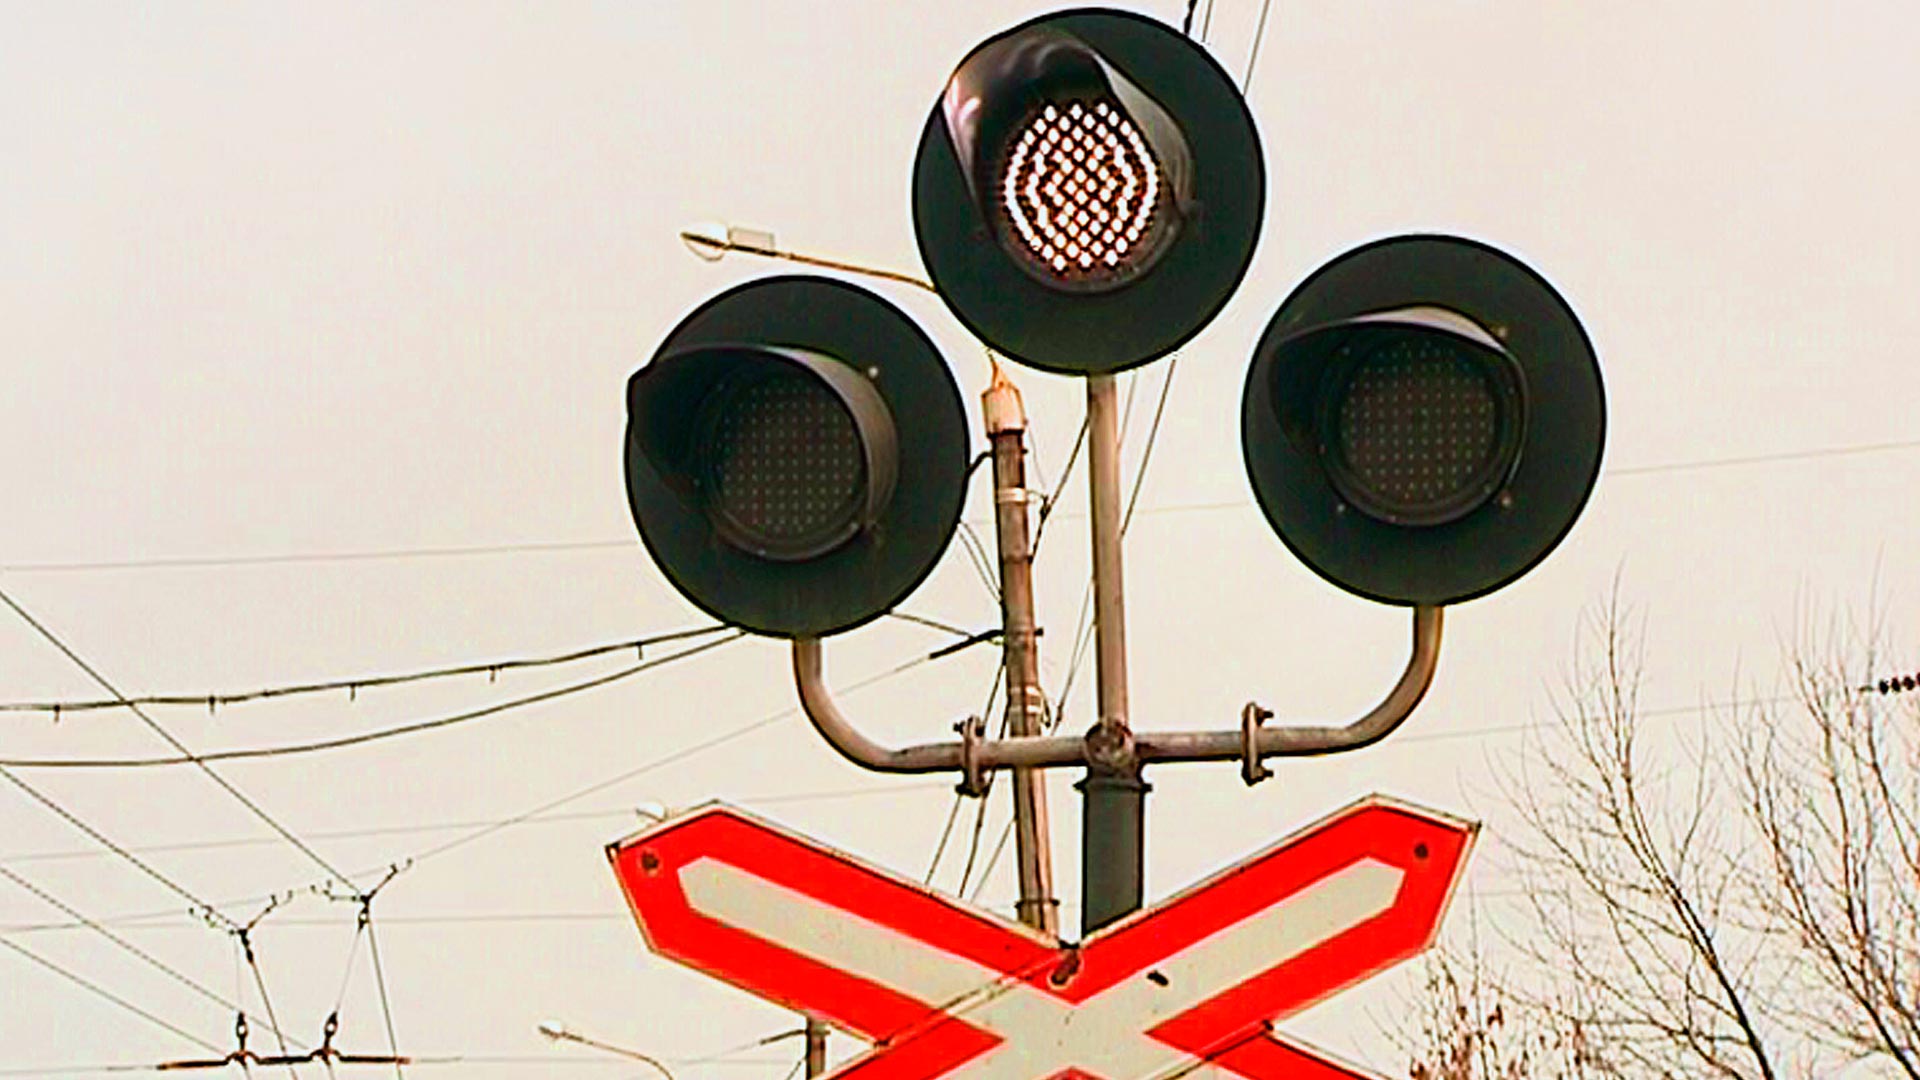 Бело лунный светофор на жд. ЖД переезд светофор семафор. ЖД переездной светофор. Железнодорожный светофор сигналы. Светофор для железной дороги.